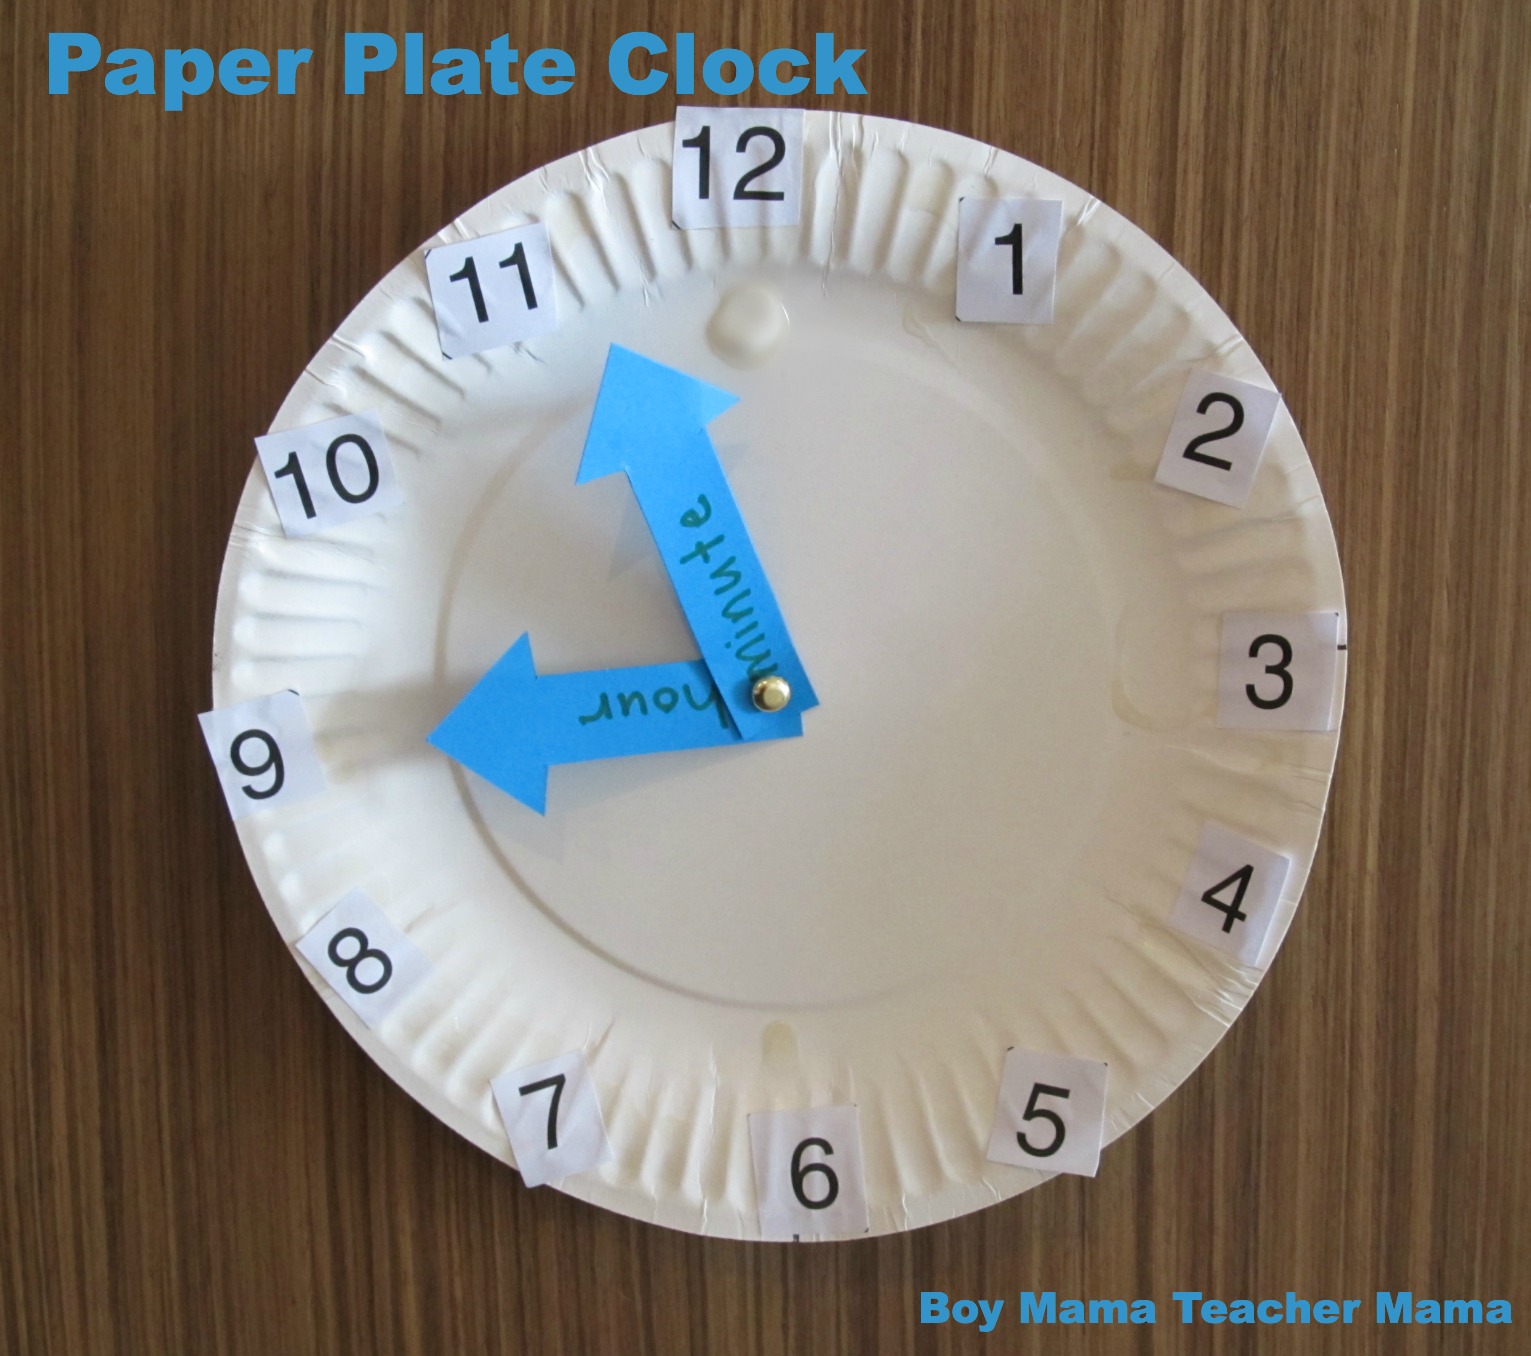 BMTM Paper Plate Clock Boy Mama Teacher Mama